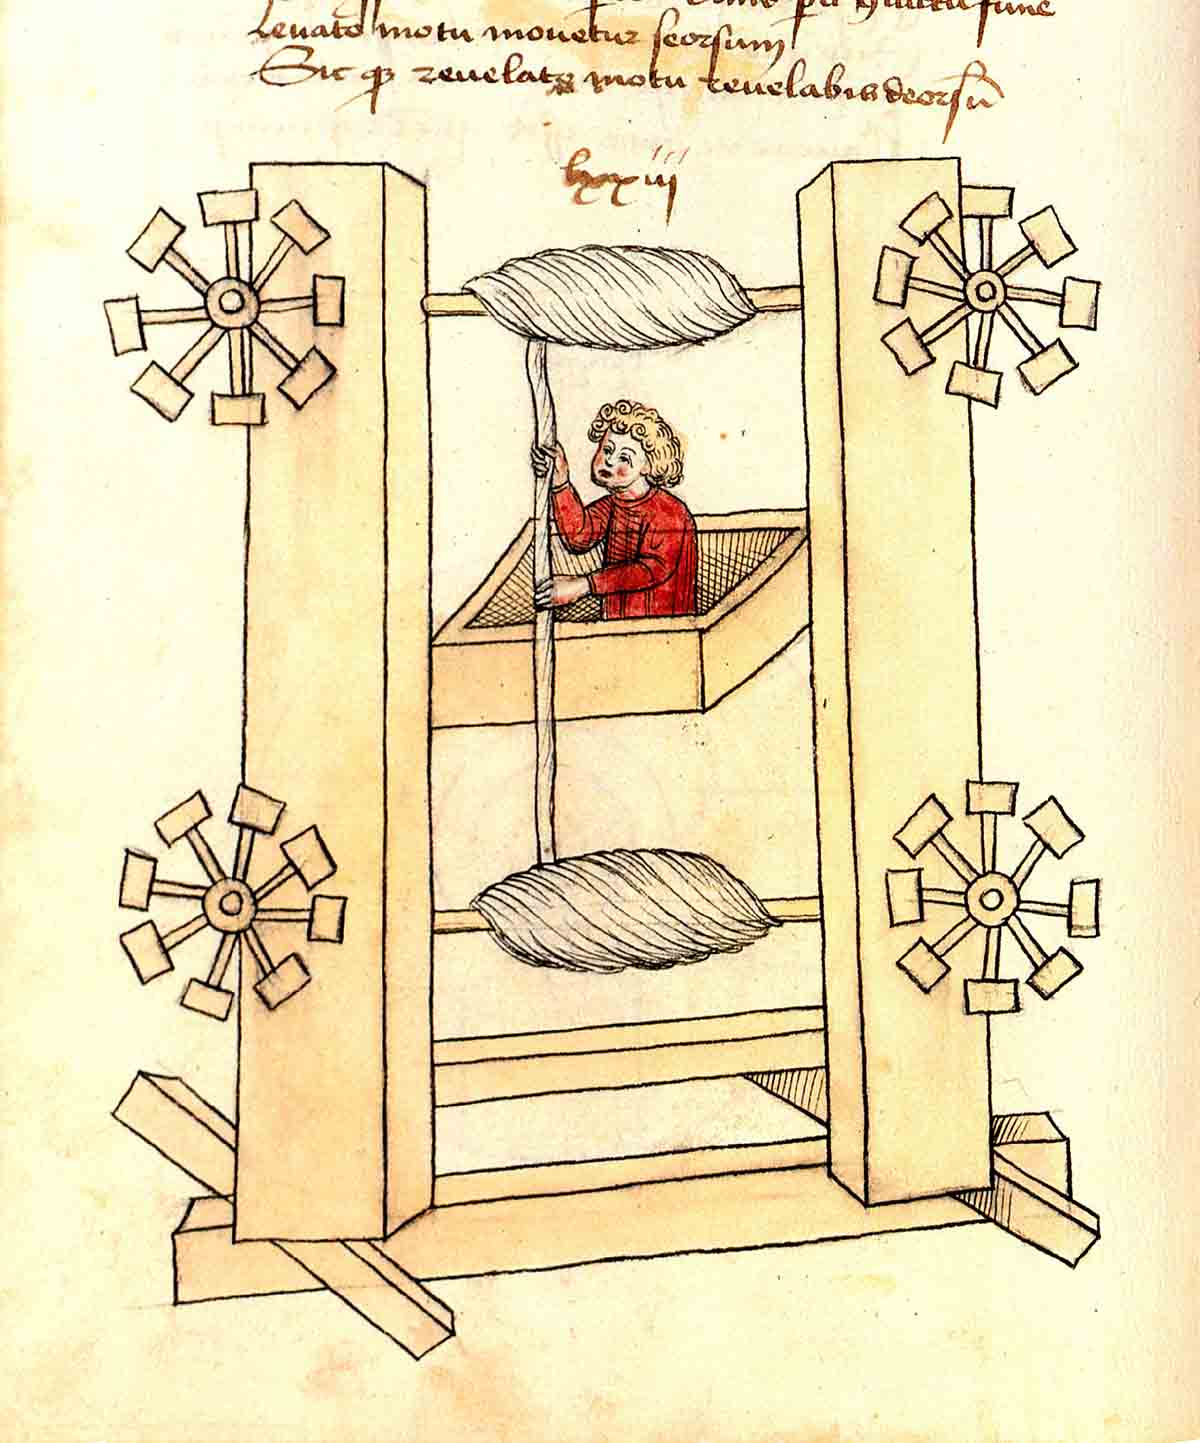 Imagen del elevador diseñado por el ingeniero Konrad Kyeser en el siglo XV